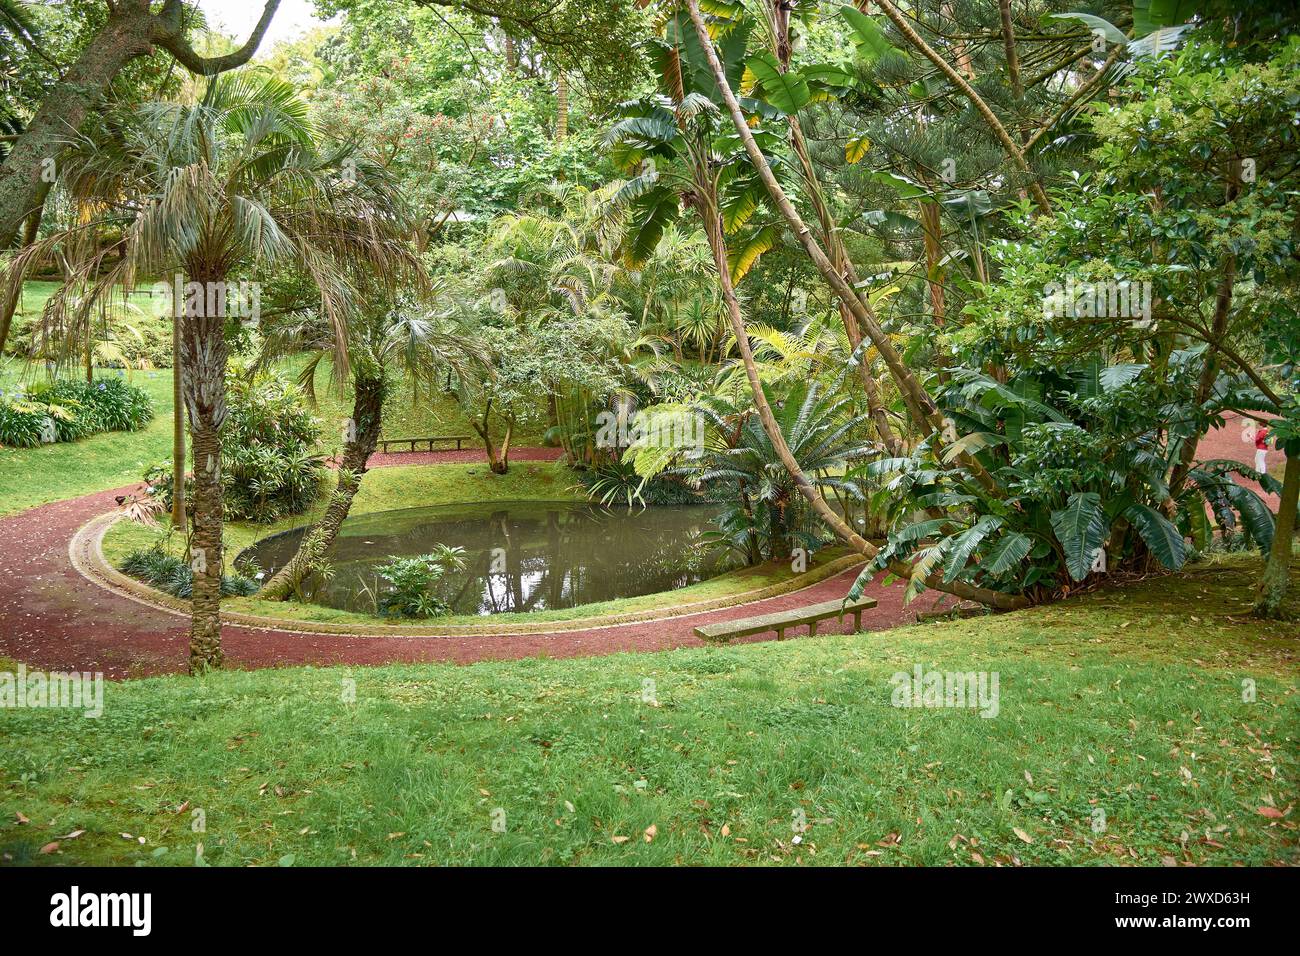 Jardim Botanico Antonio Borges. Ruhiger botanischer Garten auf den Azoren, Portugal, mit vielfältigen Pflanzenarten und ruhiger natürlicher Schönheit Stockfoto